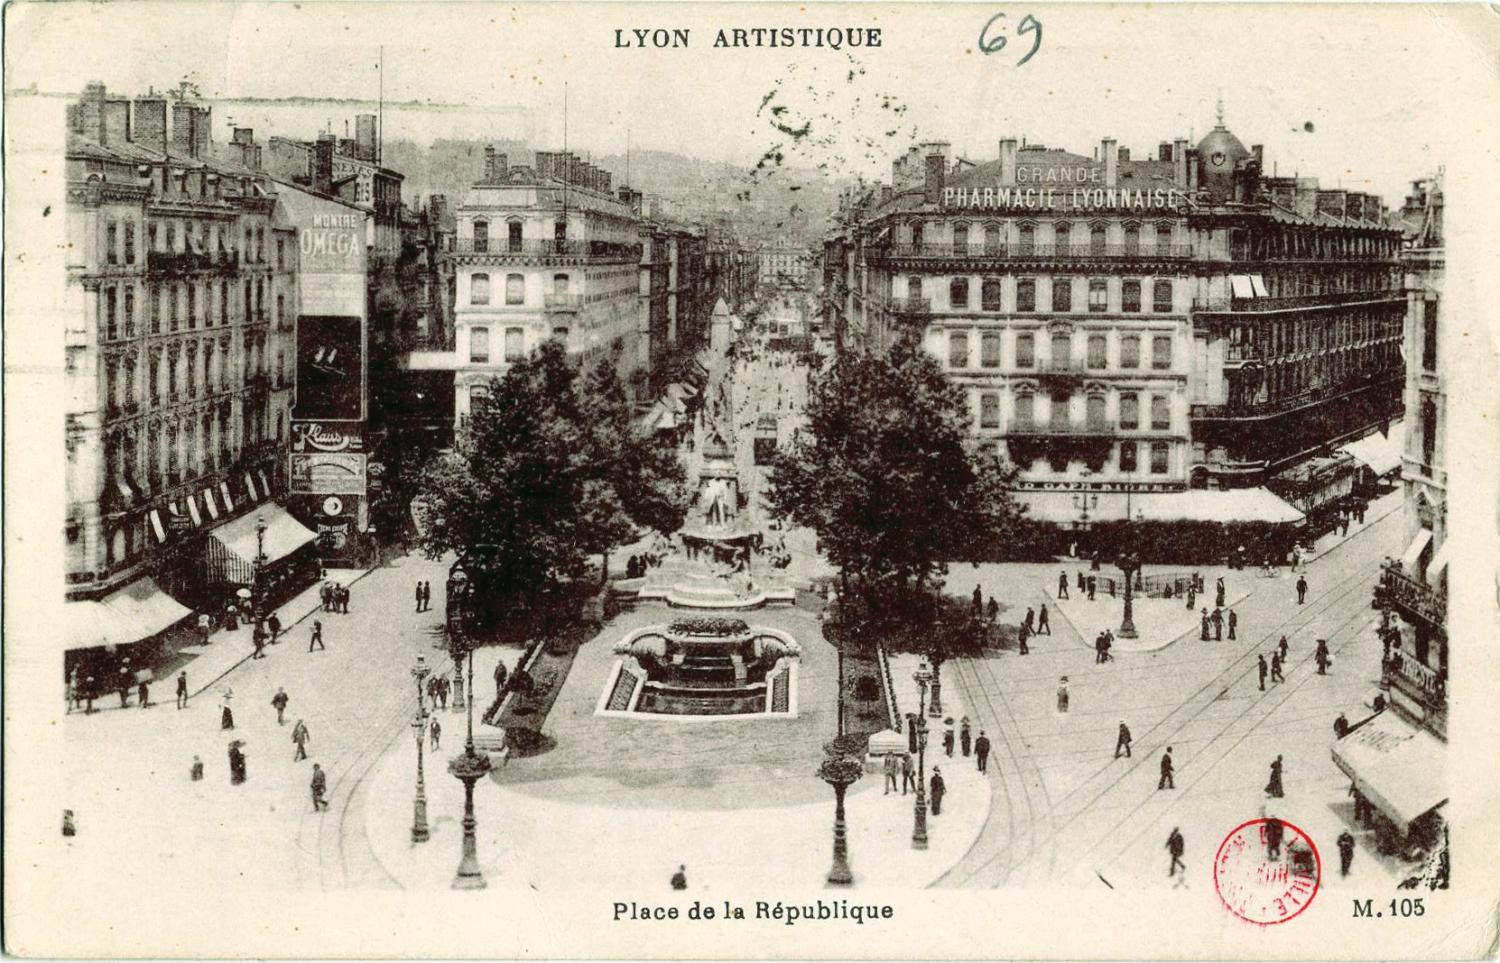 Lyon artistique : Place de la République